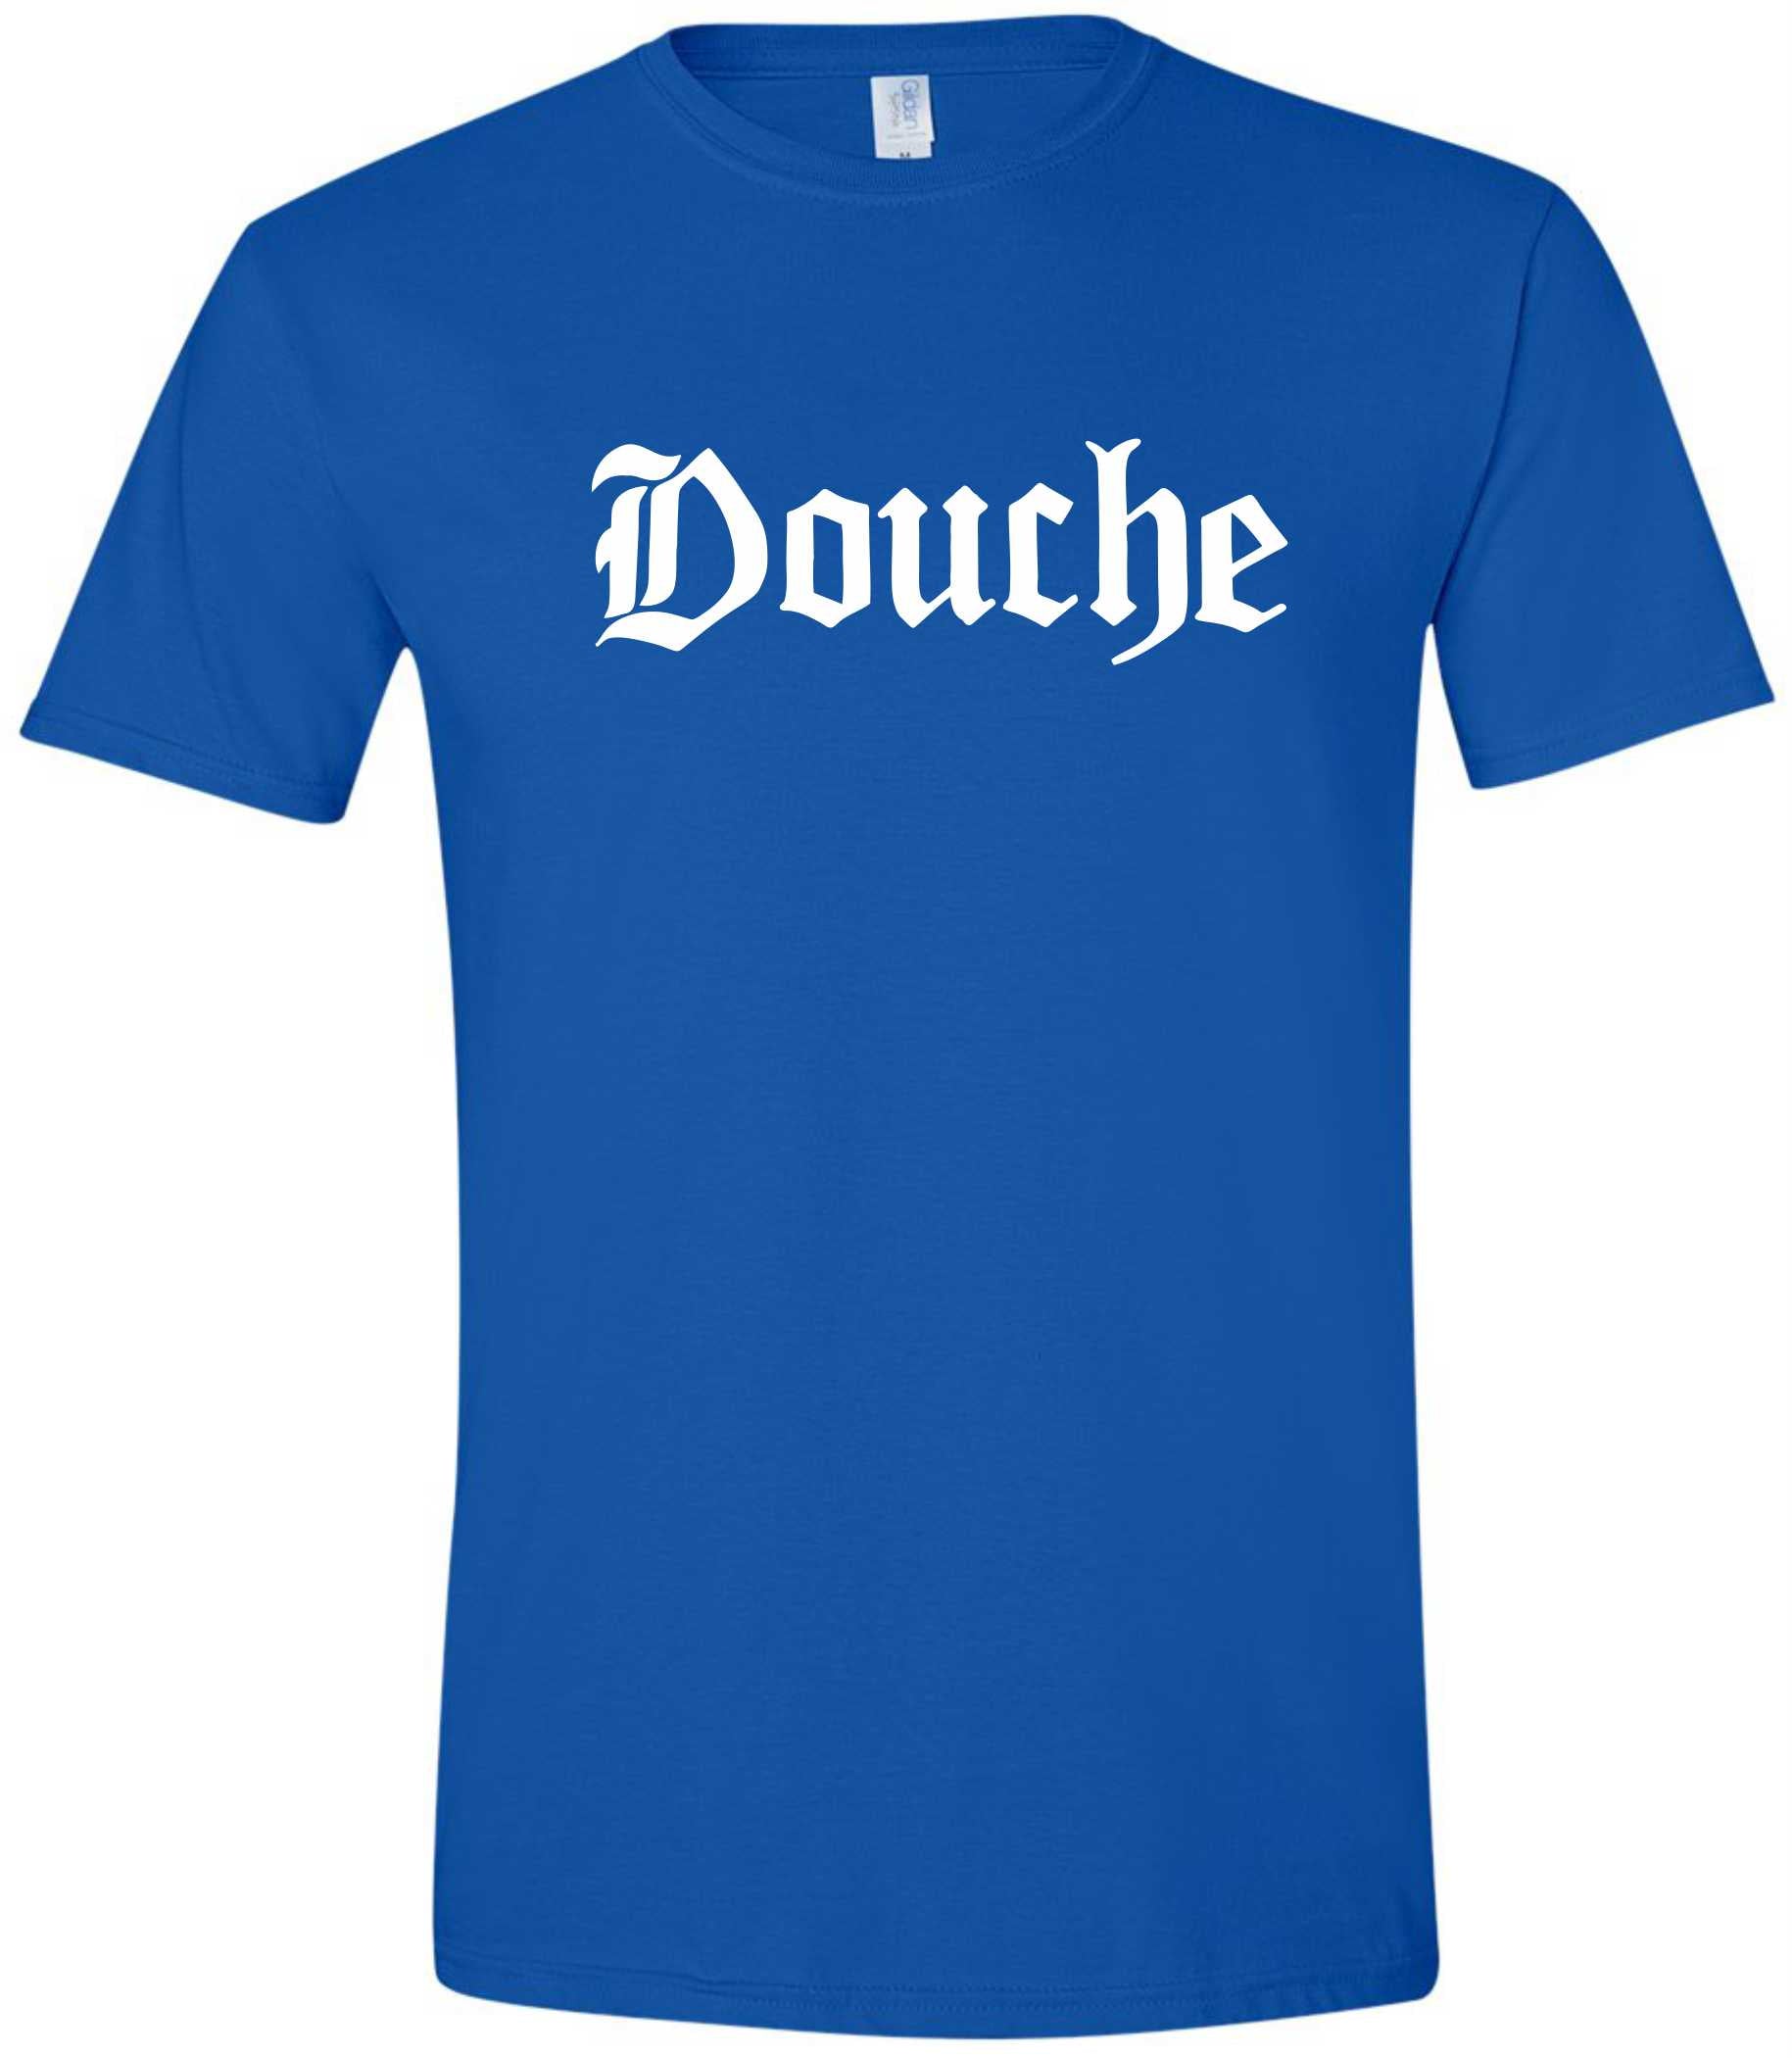 Douche T-shirt